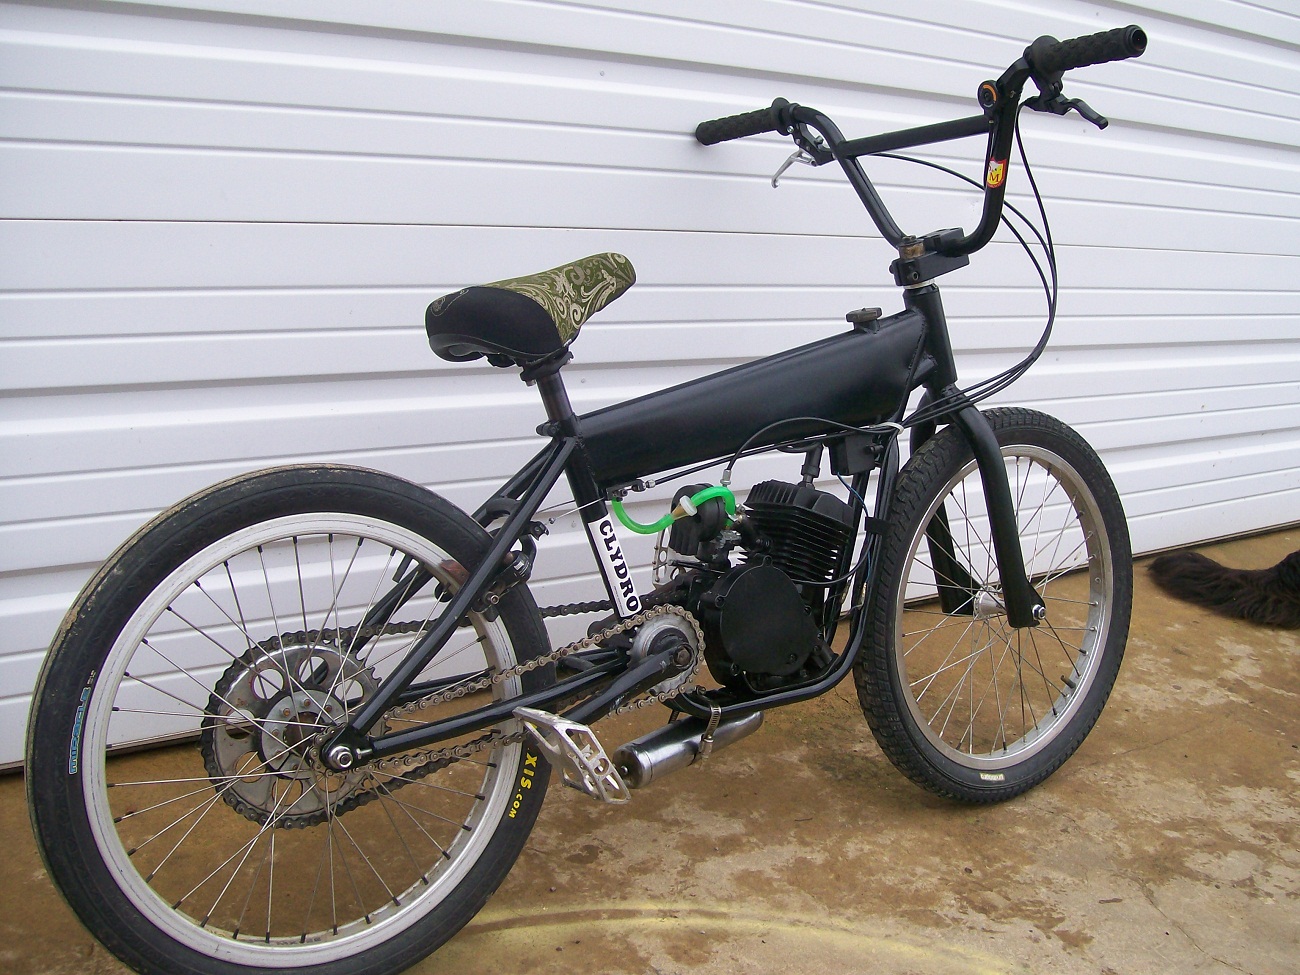 motorized bmx bike for sale